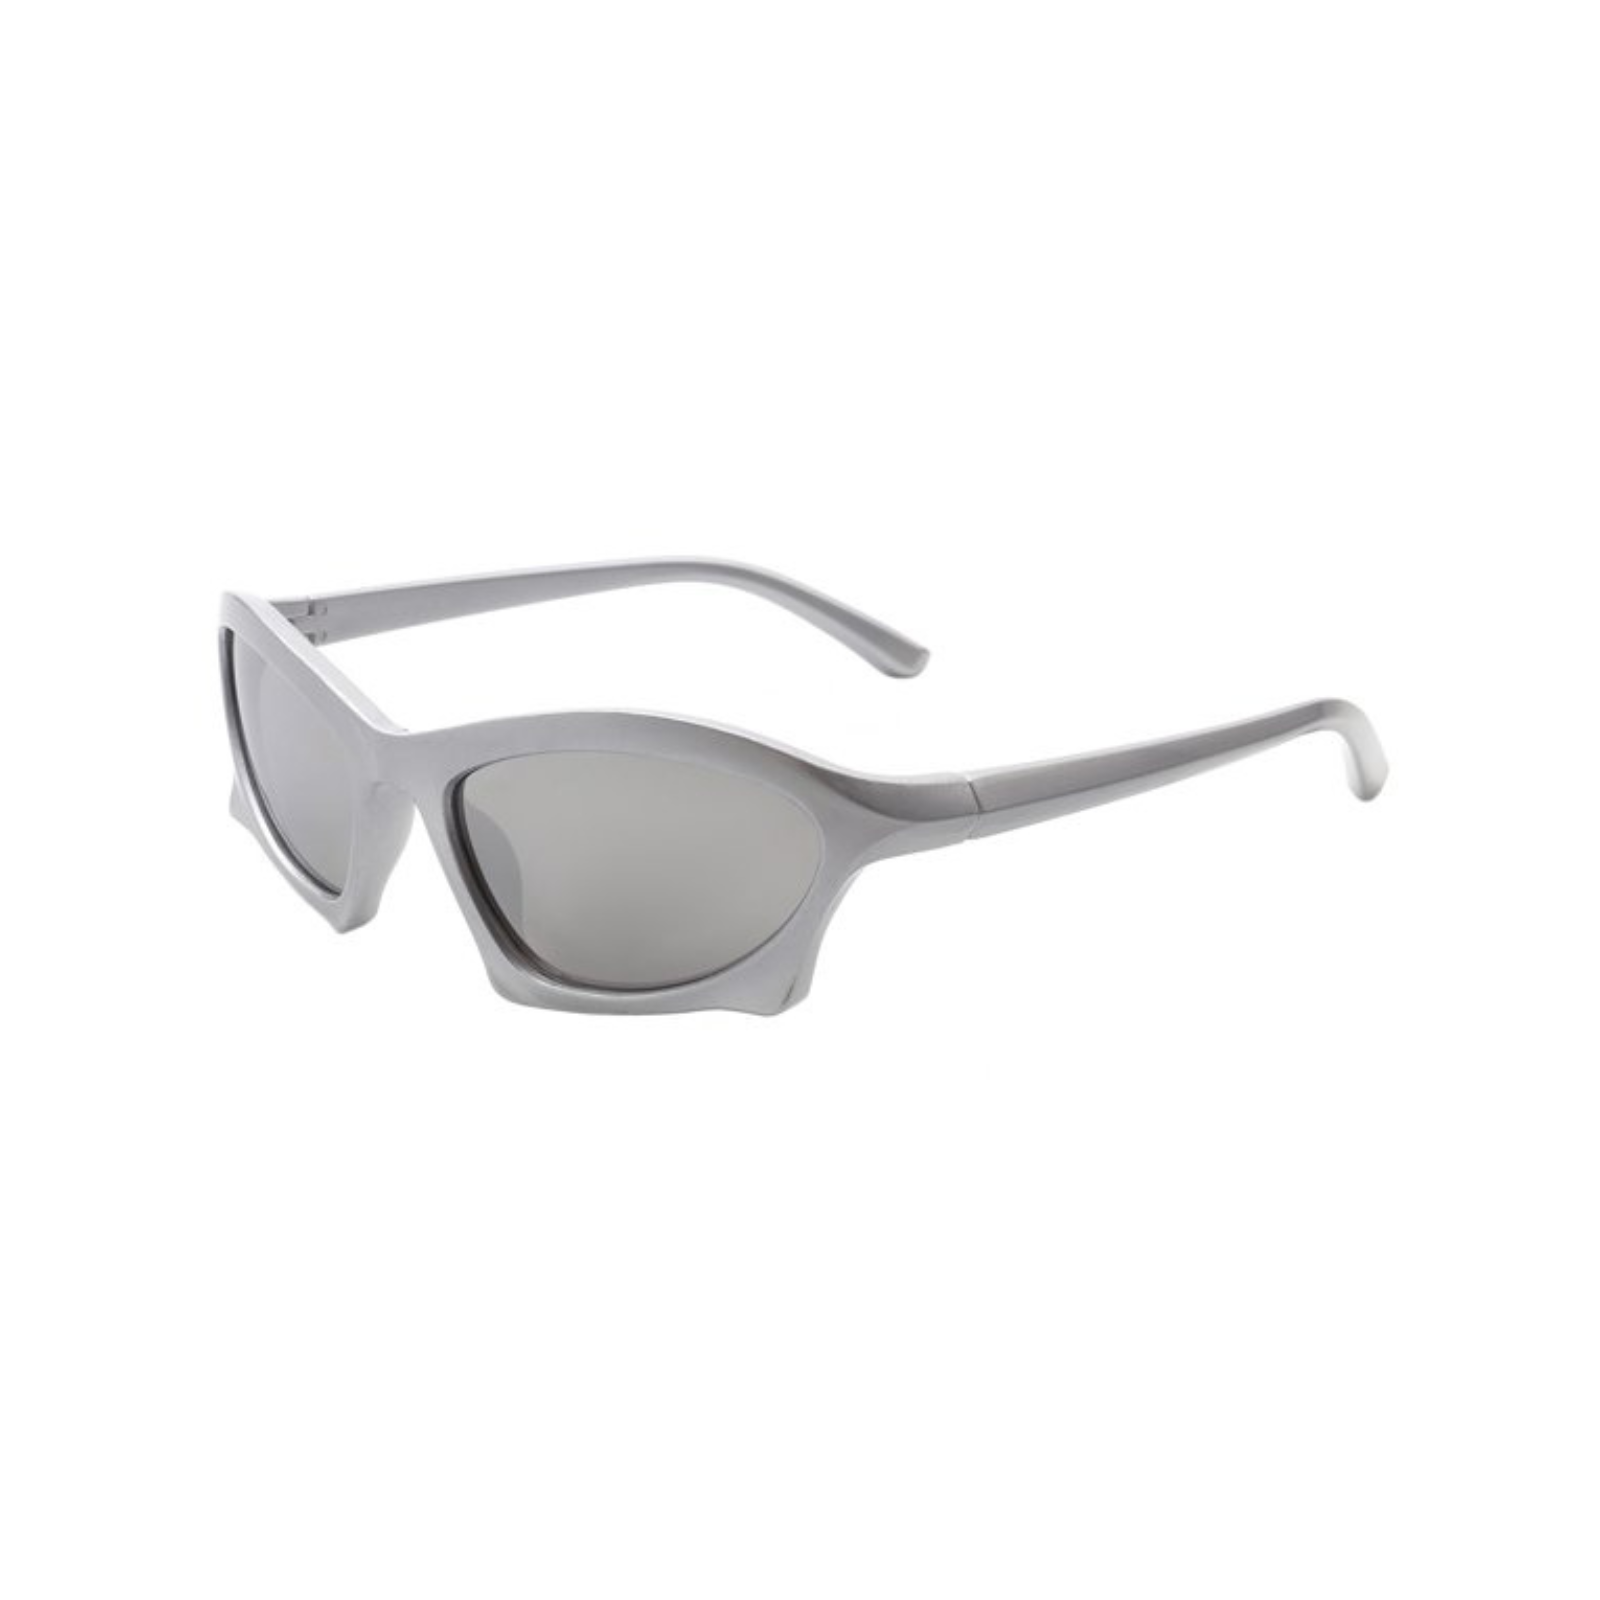 Roma Sunglasses + Silver / Silver